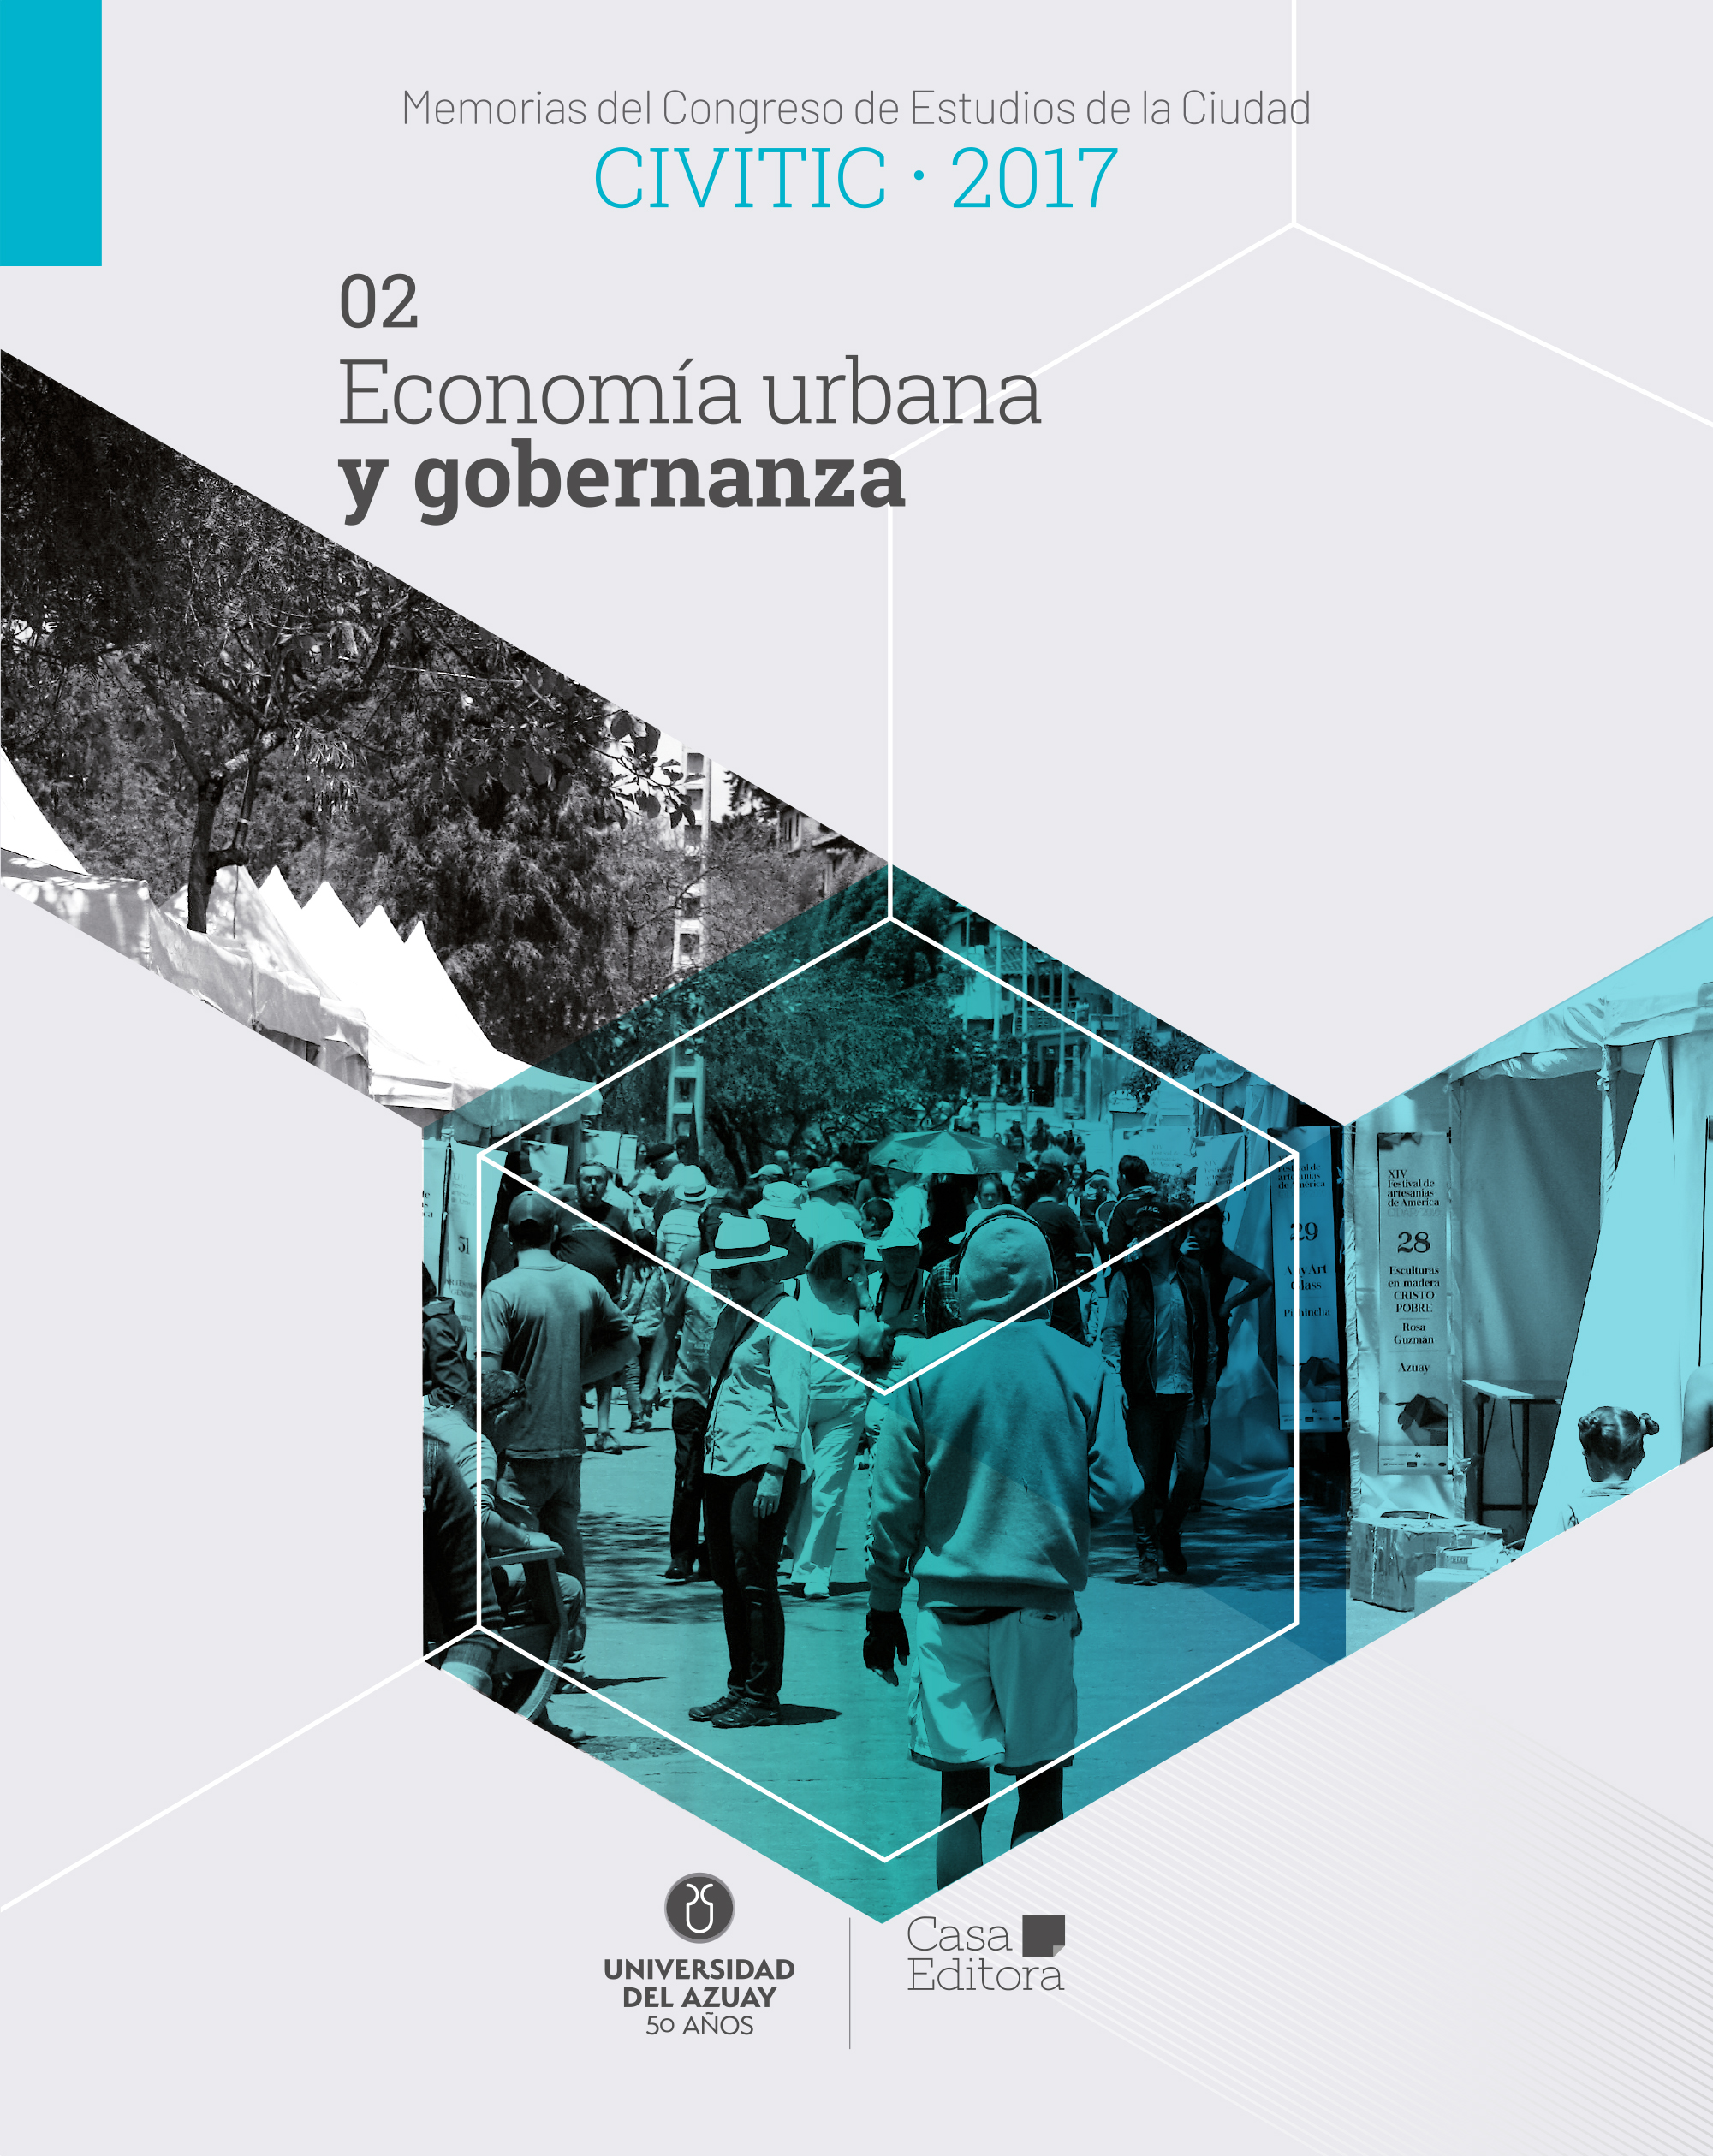 					View Memorias del Congreso de Estudios de la Ciudad CIVITIC 2017 - Economía urbana y gobernanza
				